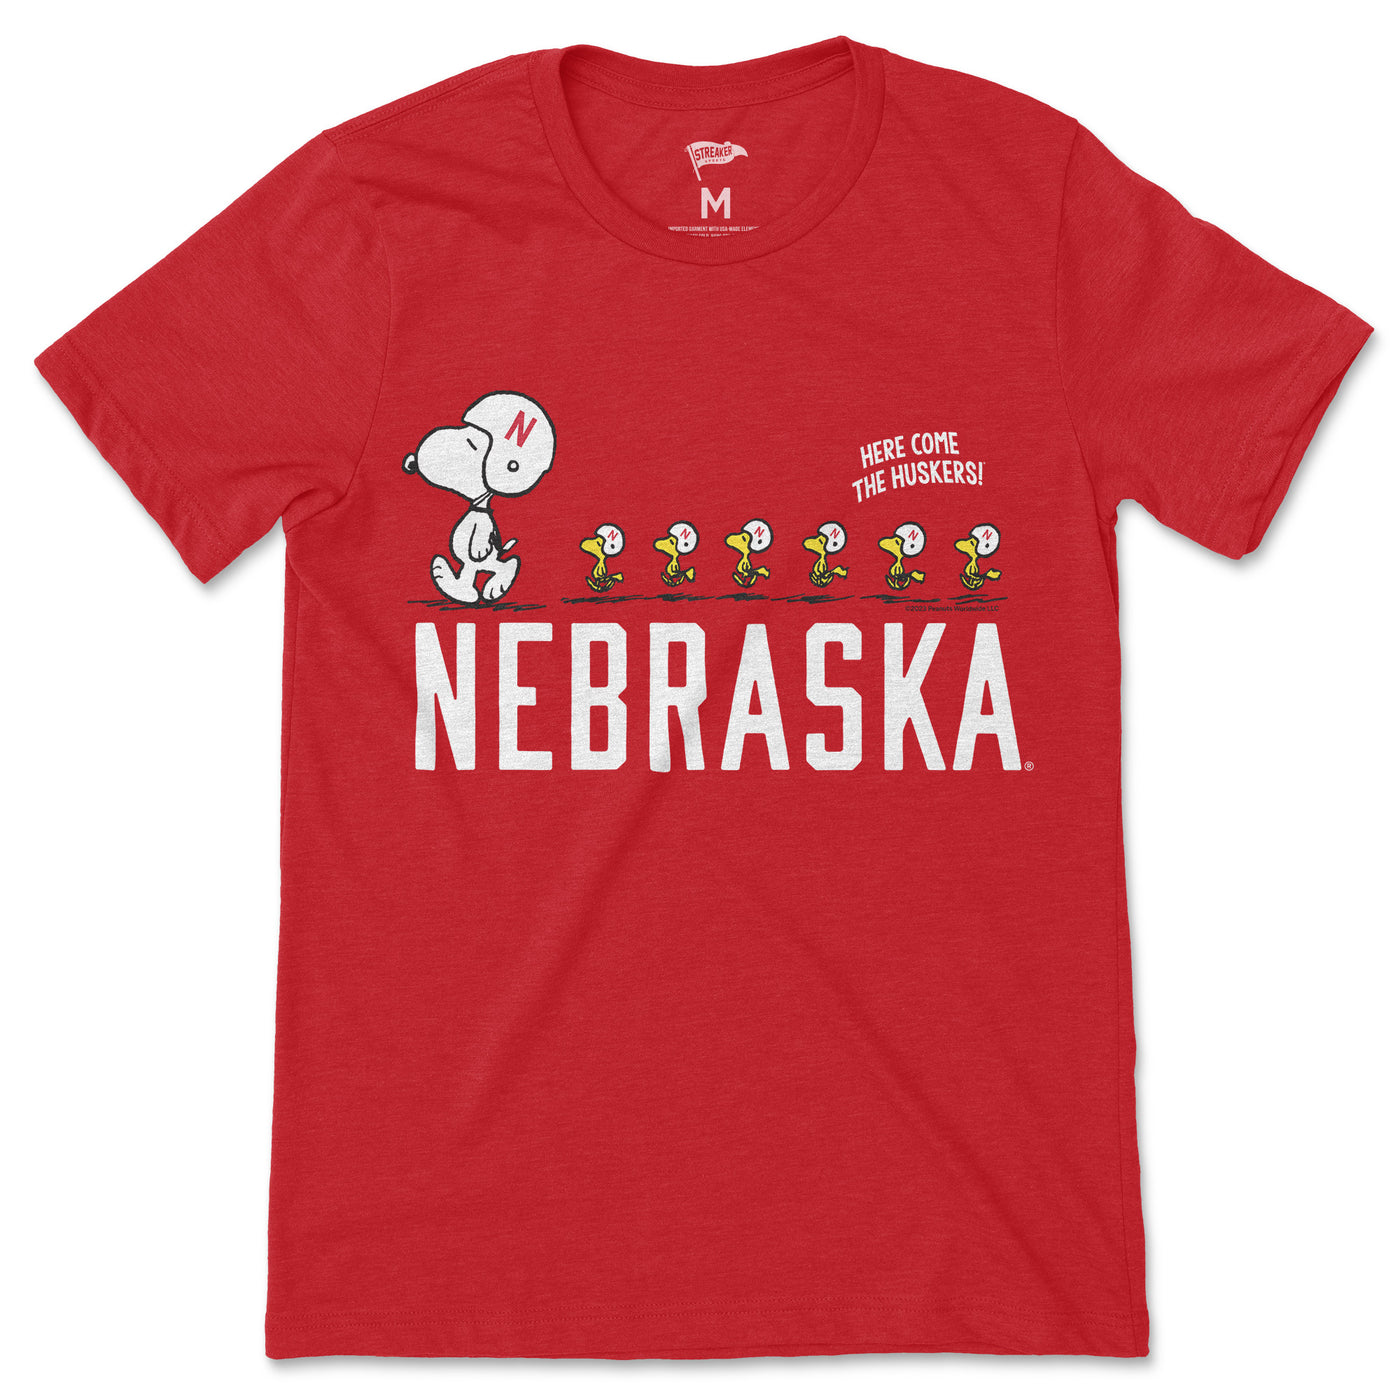 Peanuts x Nebraska Snoopy's Football Team Tee - Streaker Sports